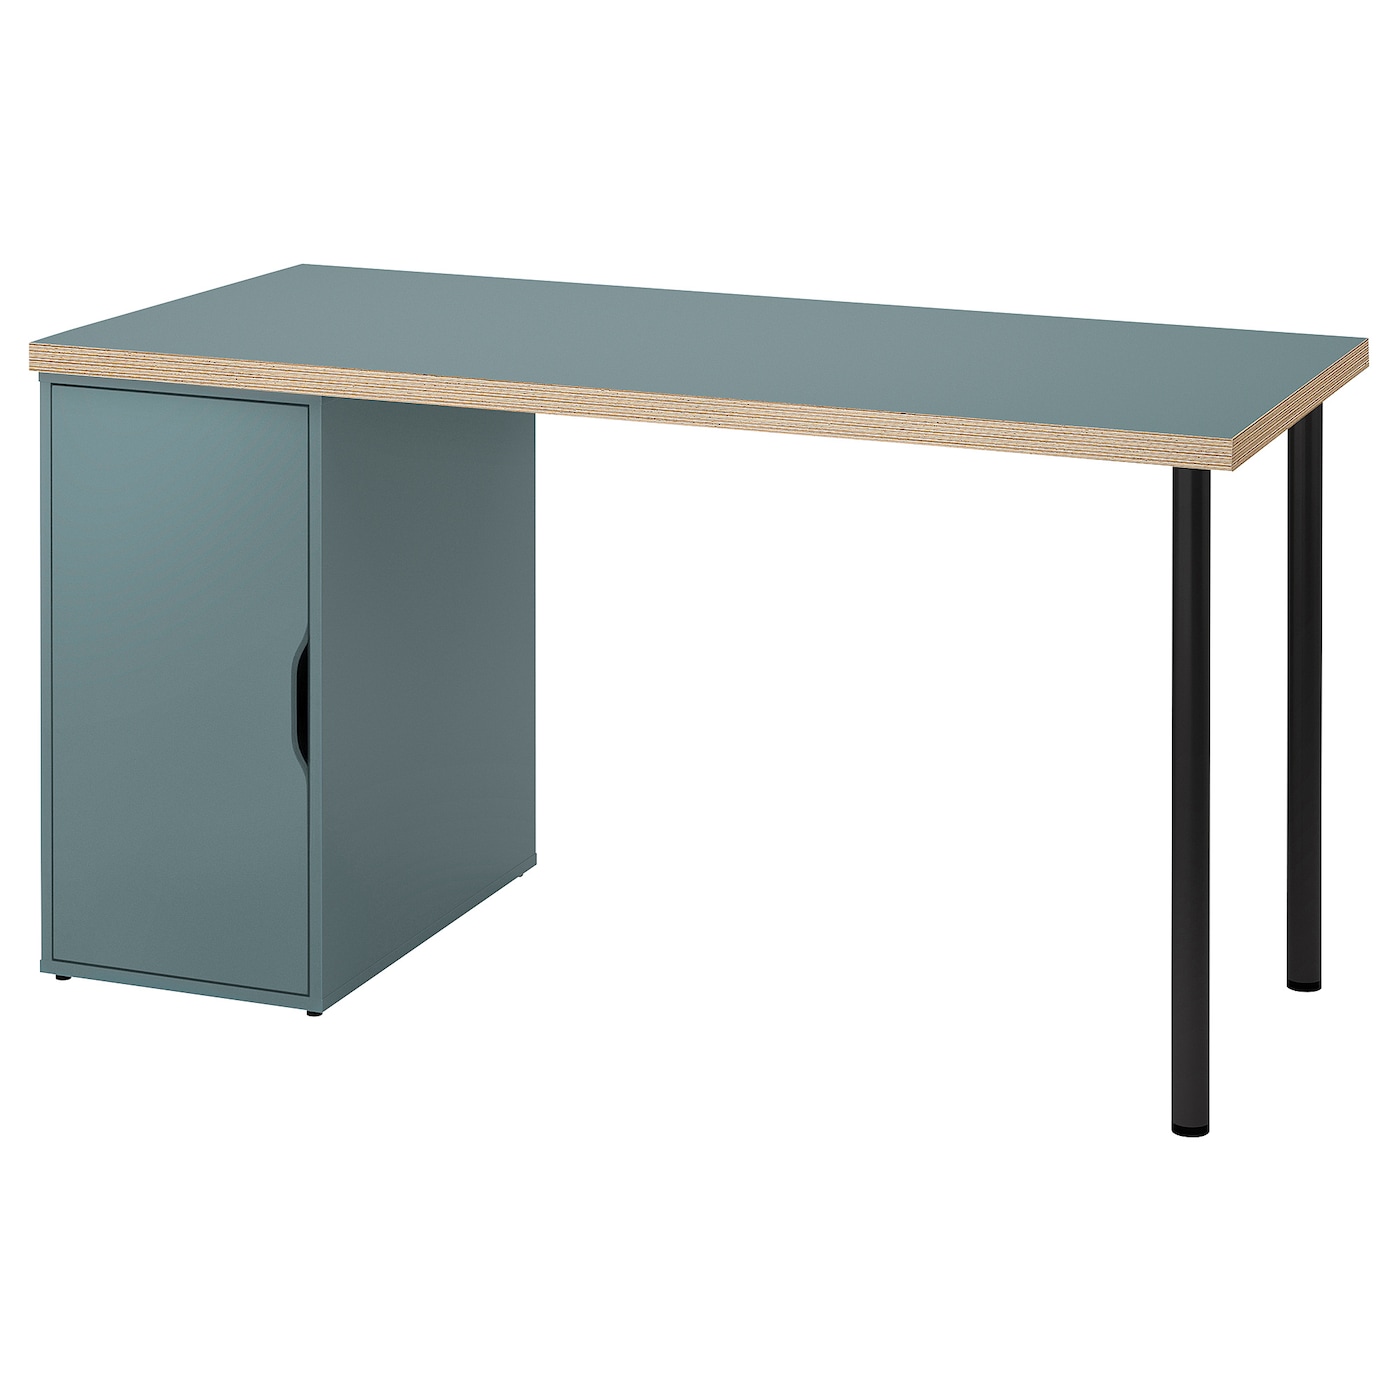 Письменный стол с ящиком - IKEA LAGKAPTEN/ALEX, 140х60 см, серый/черный, ЛАГКАПТЕН/АЛЕКС ИКЕА